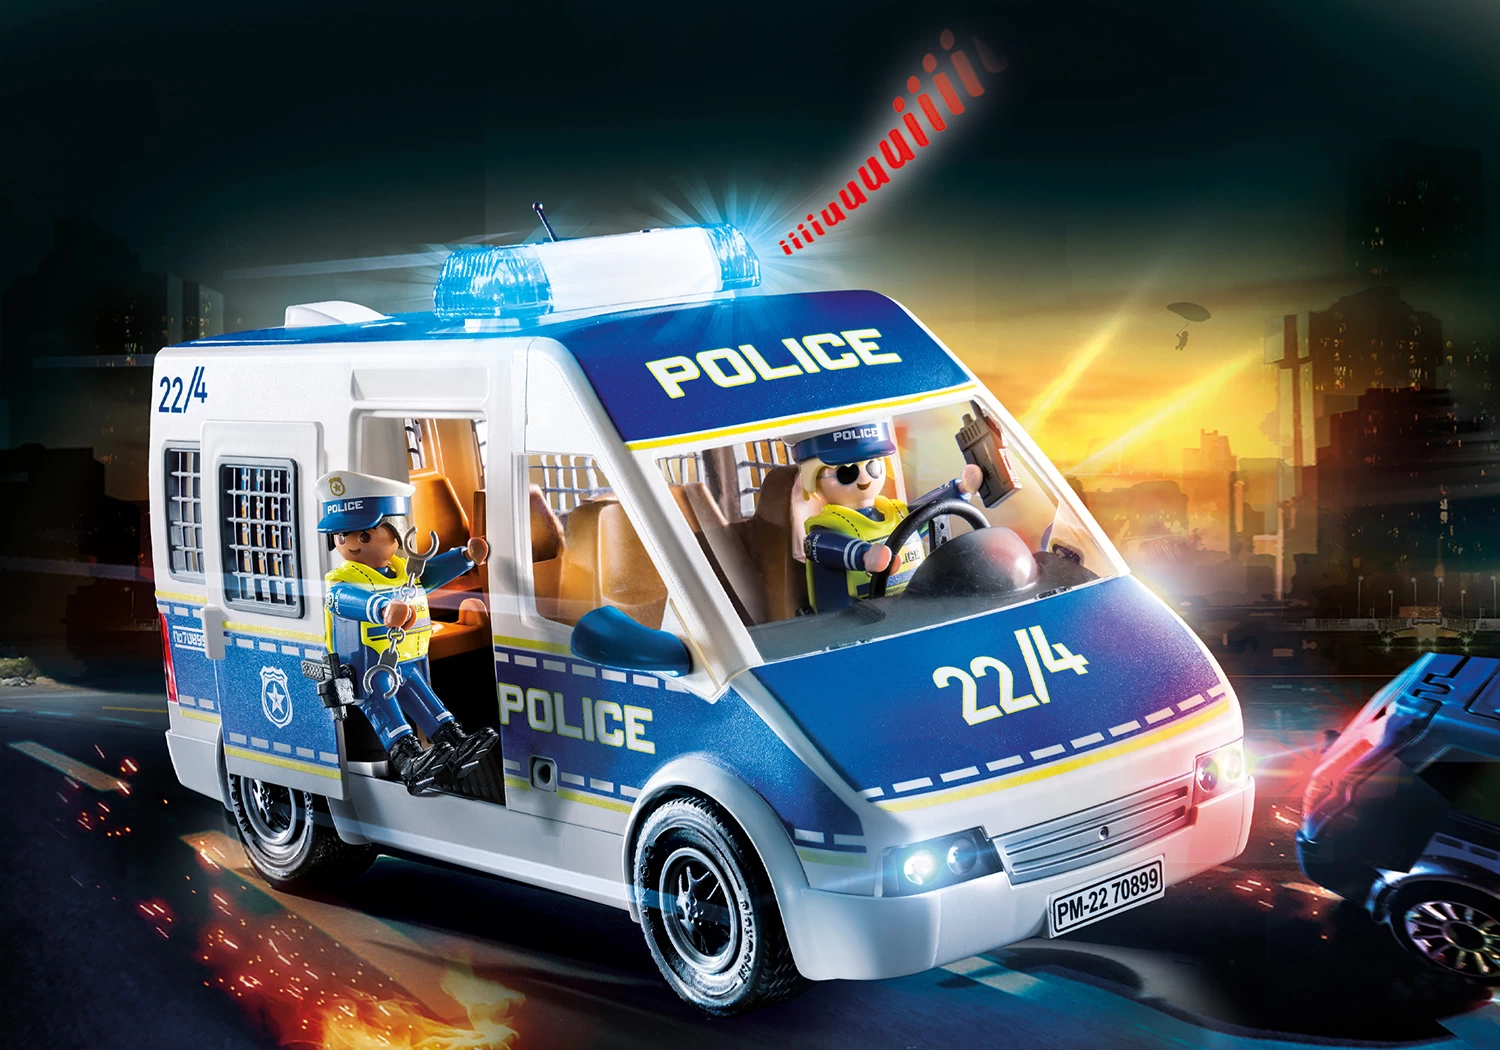 Polizei Mannschaftswagen (70899)